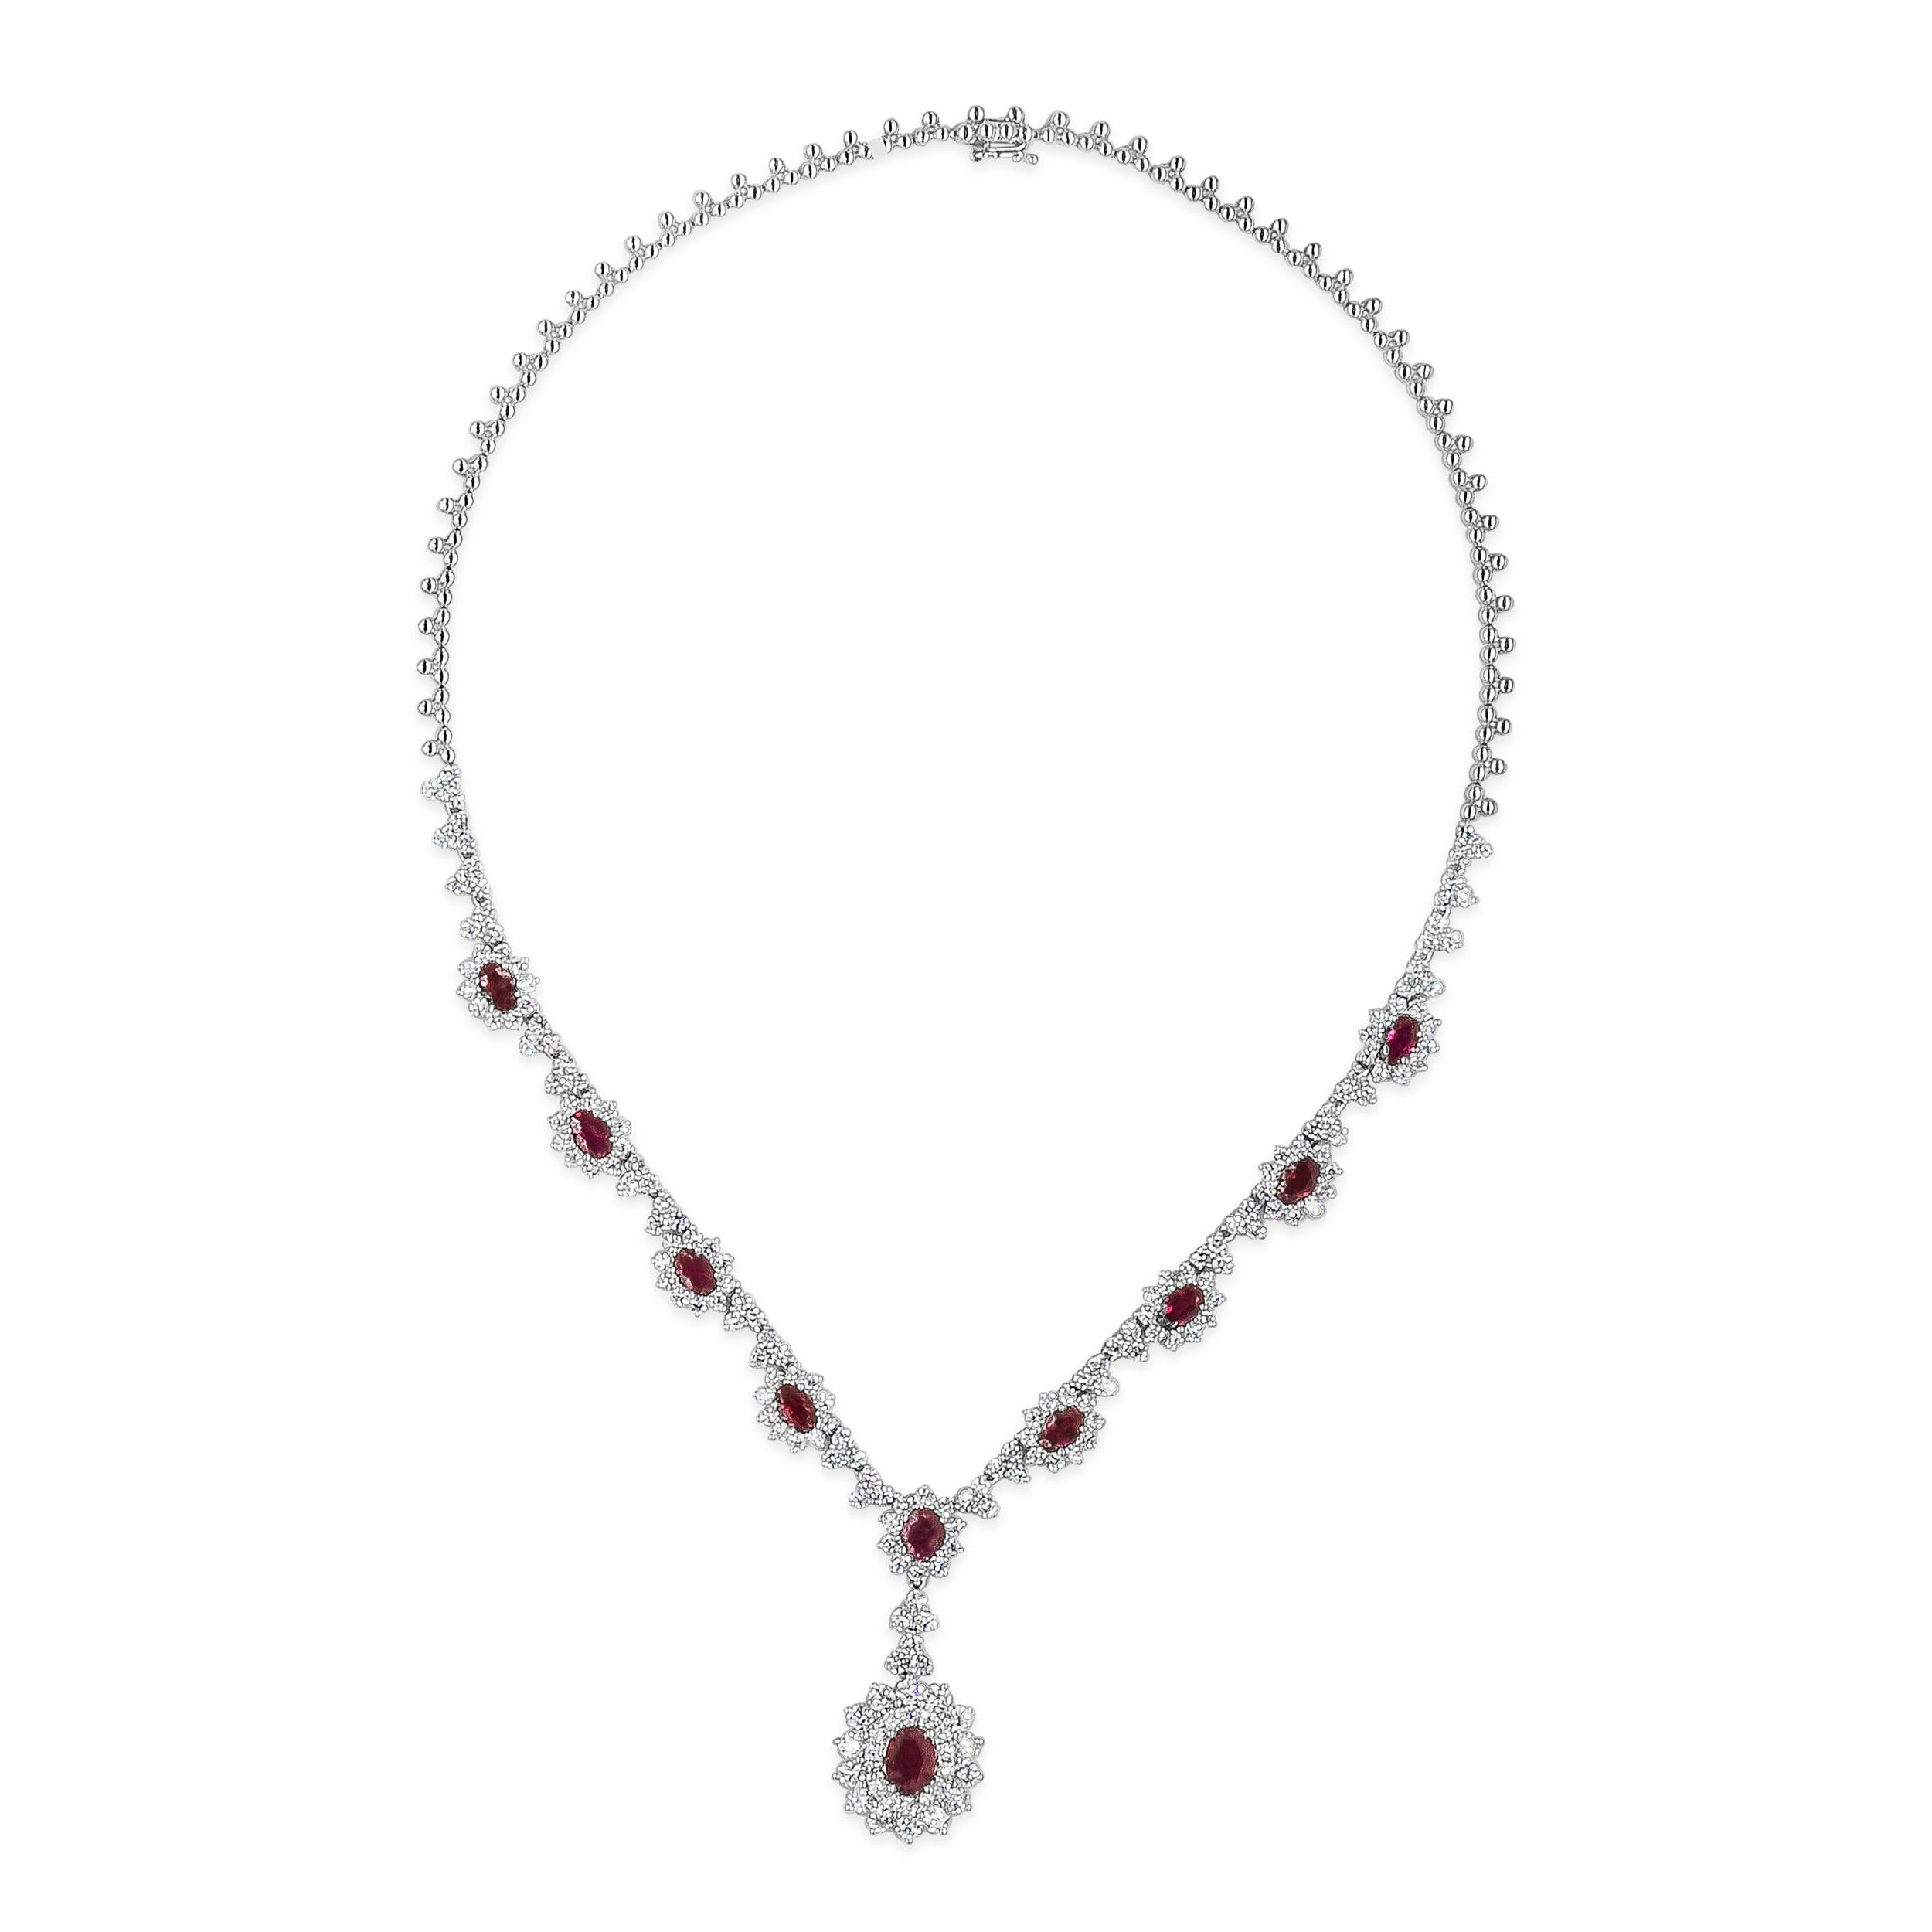 Ce collier élégant et de grande classe présente un pendentif en forme de goutte avec un rubis ovale de 1,30 carats, entouré de deux rangées de diamants ronds de taille brillant. Suspendue à une chaîne en forme de halo sertie de rubis et de diamants